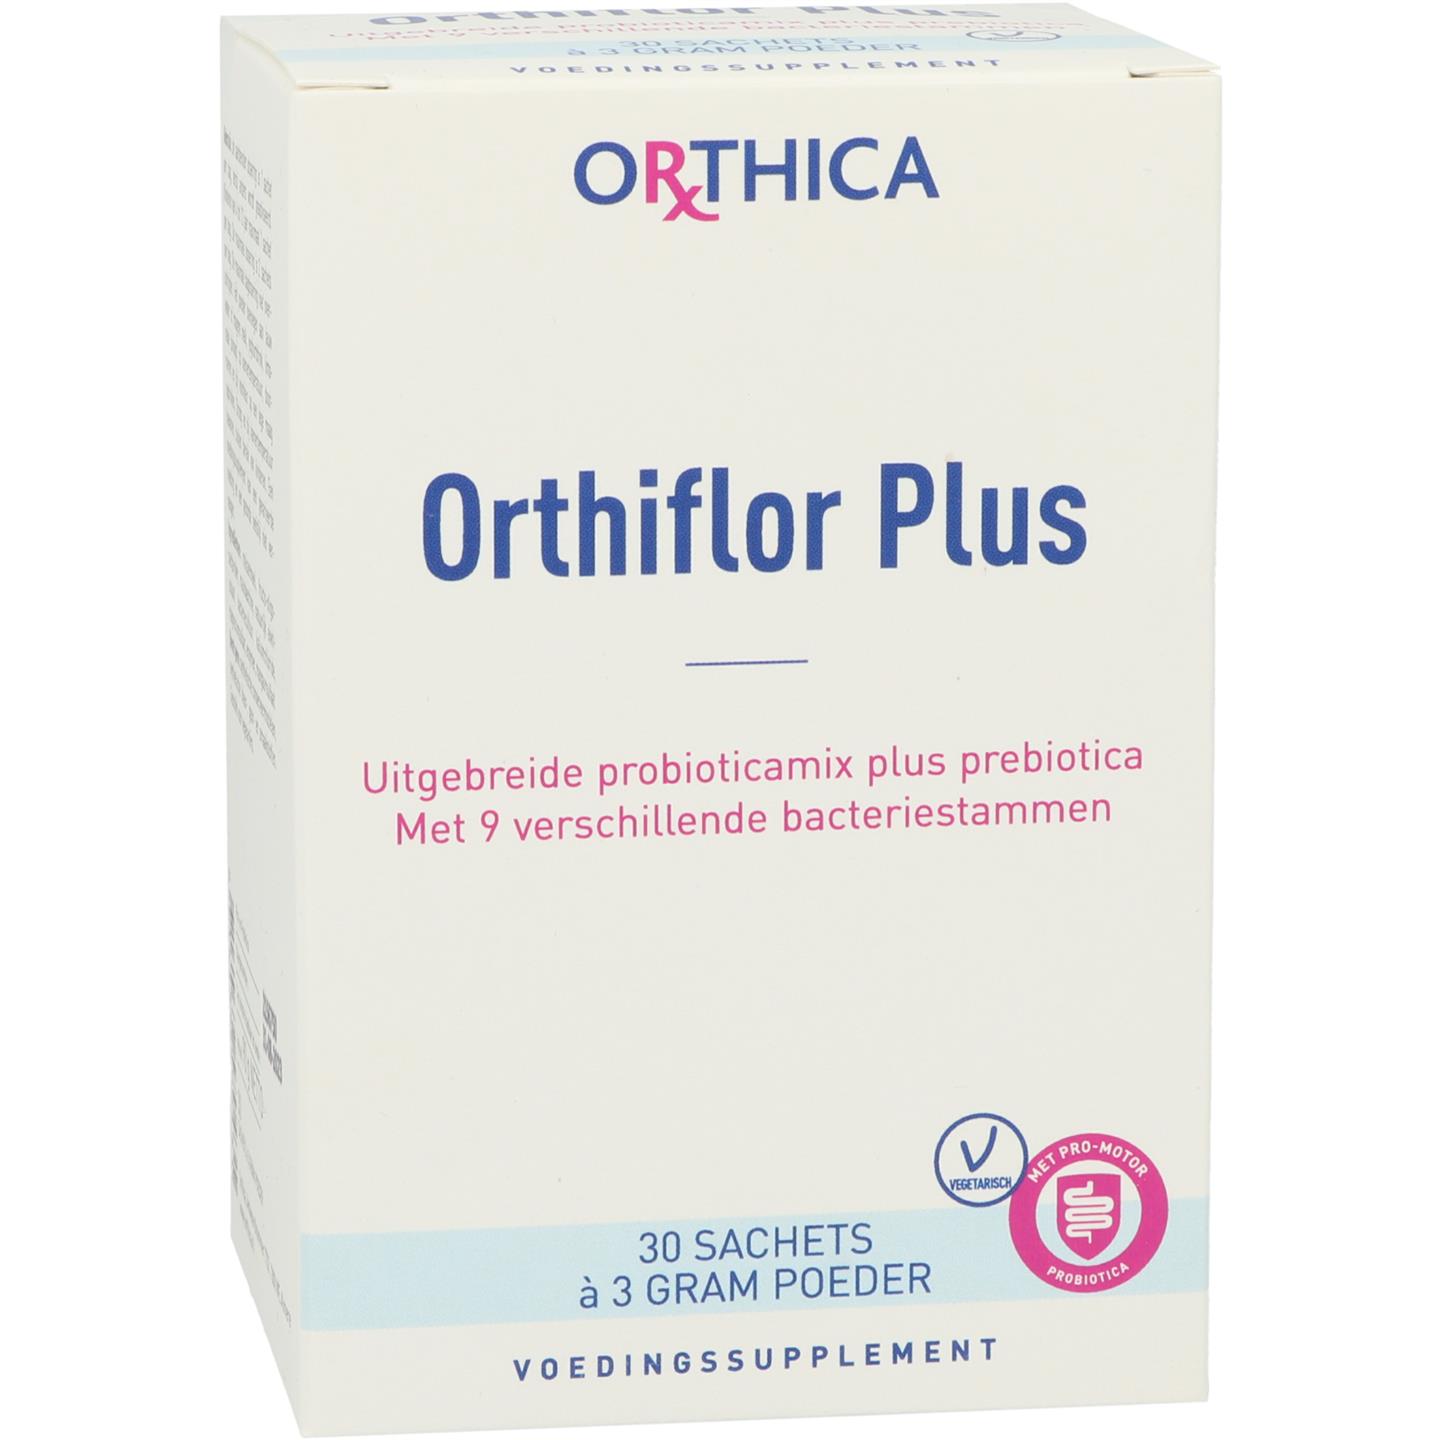 Orthiflor Plus